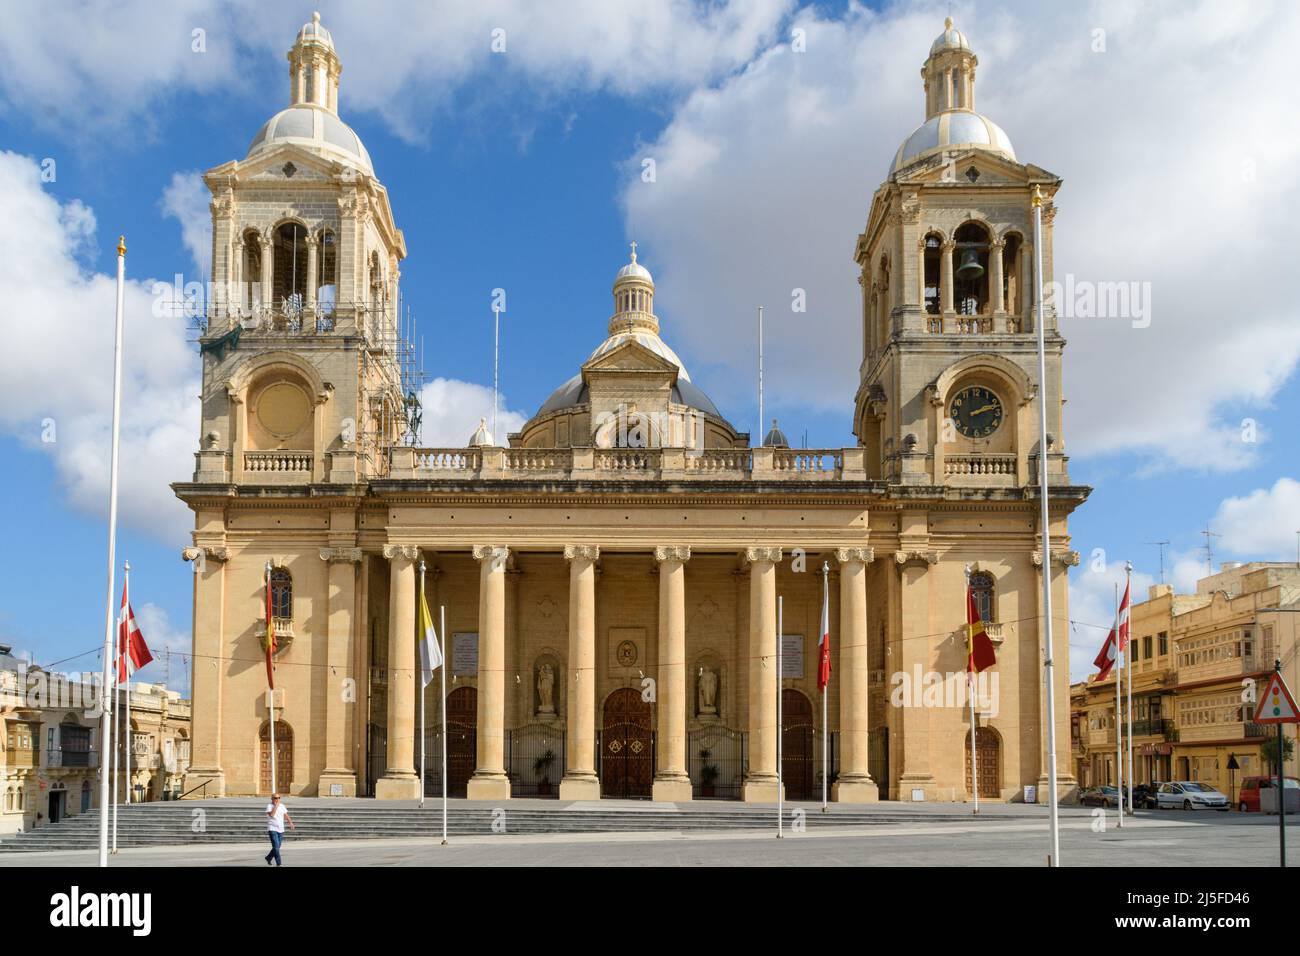 Paola, Malta - Oktober 20. 2019: Die Basilika Christi des Königs, die Pfarrkirche von Paola, wurde 1959 fertiggestellt. Stockfoto